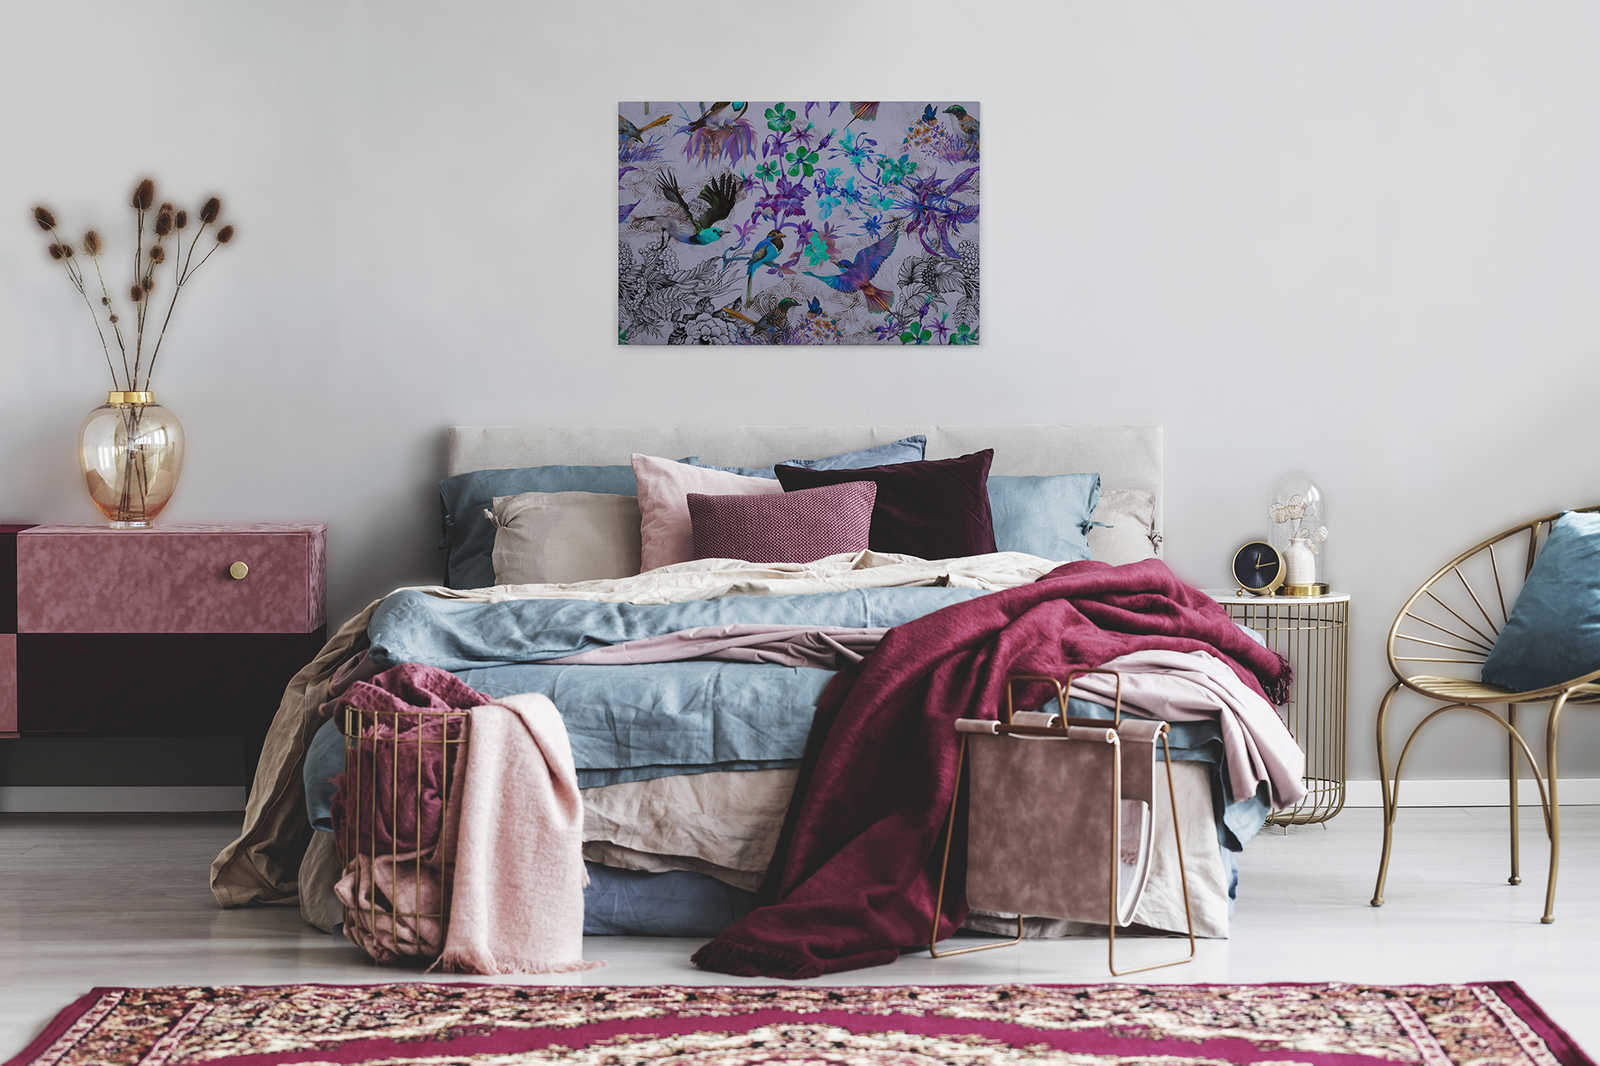             Violettes Leinwandbild mit Blumen & Vögeln – 0,90 m x 0,60 m
        